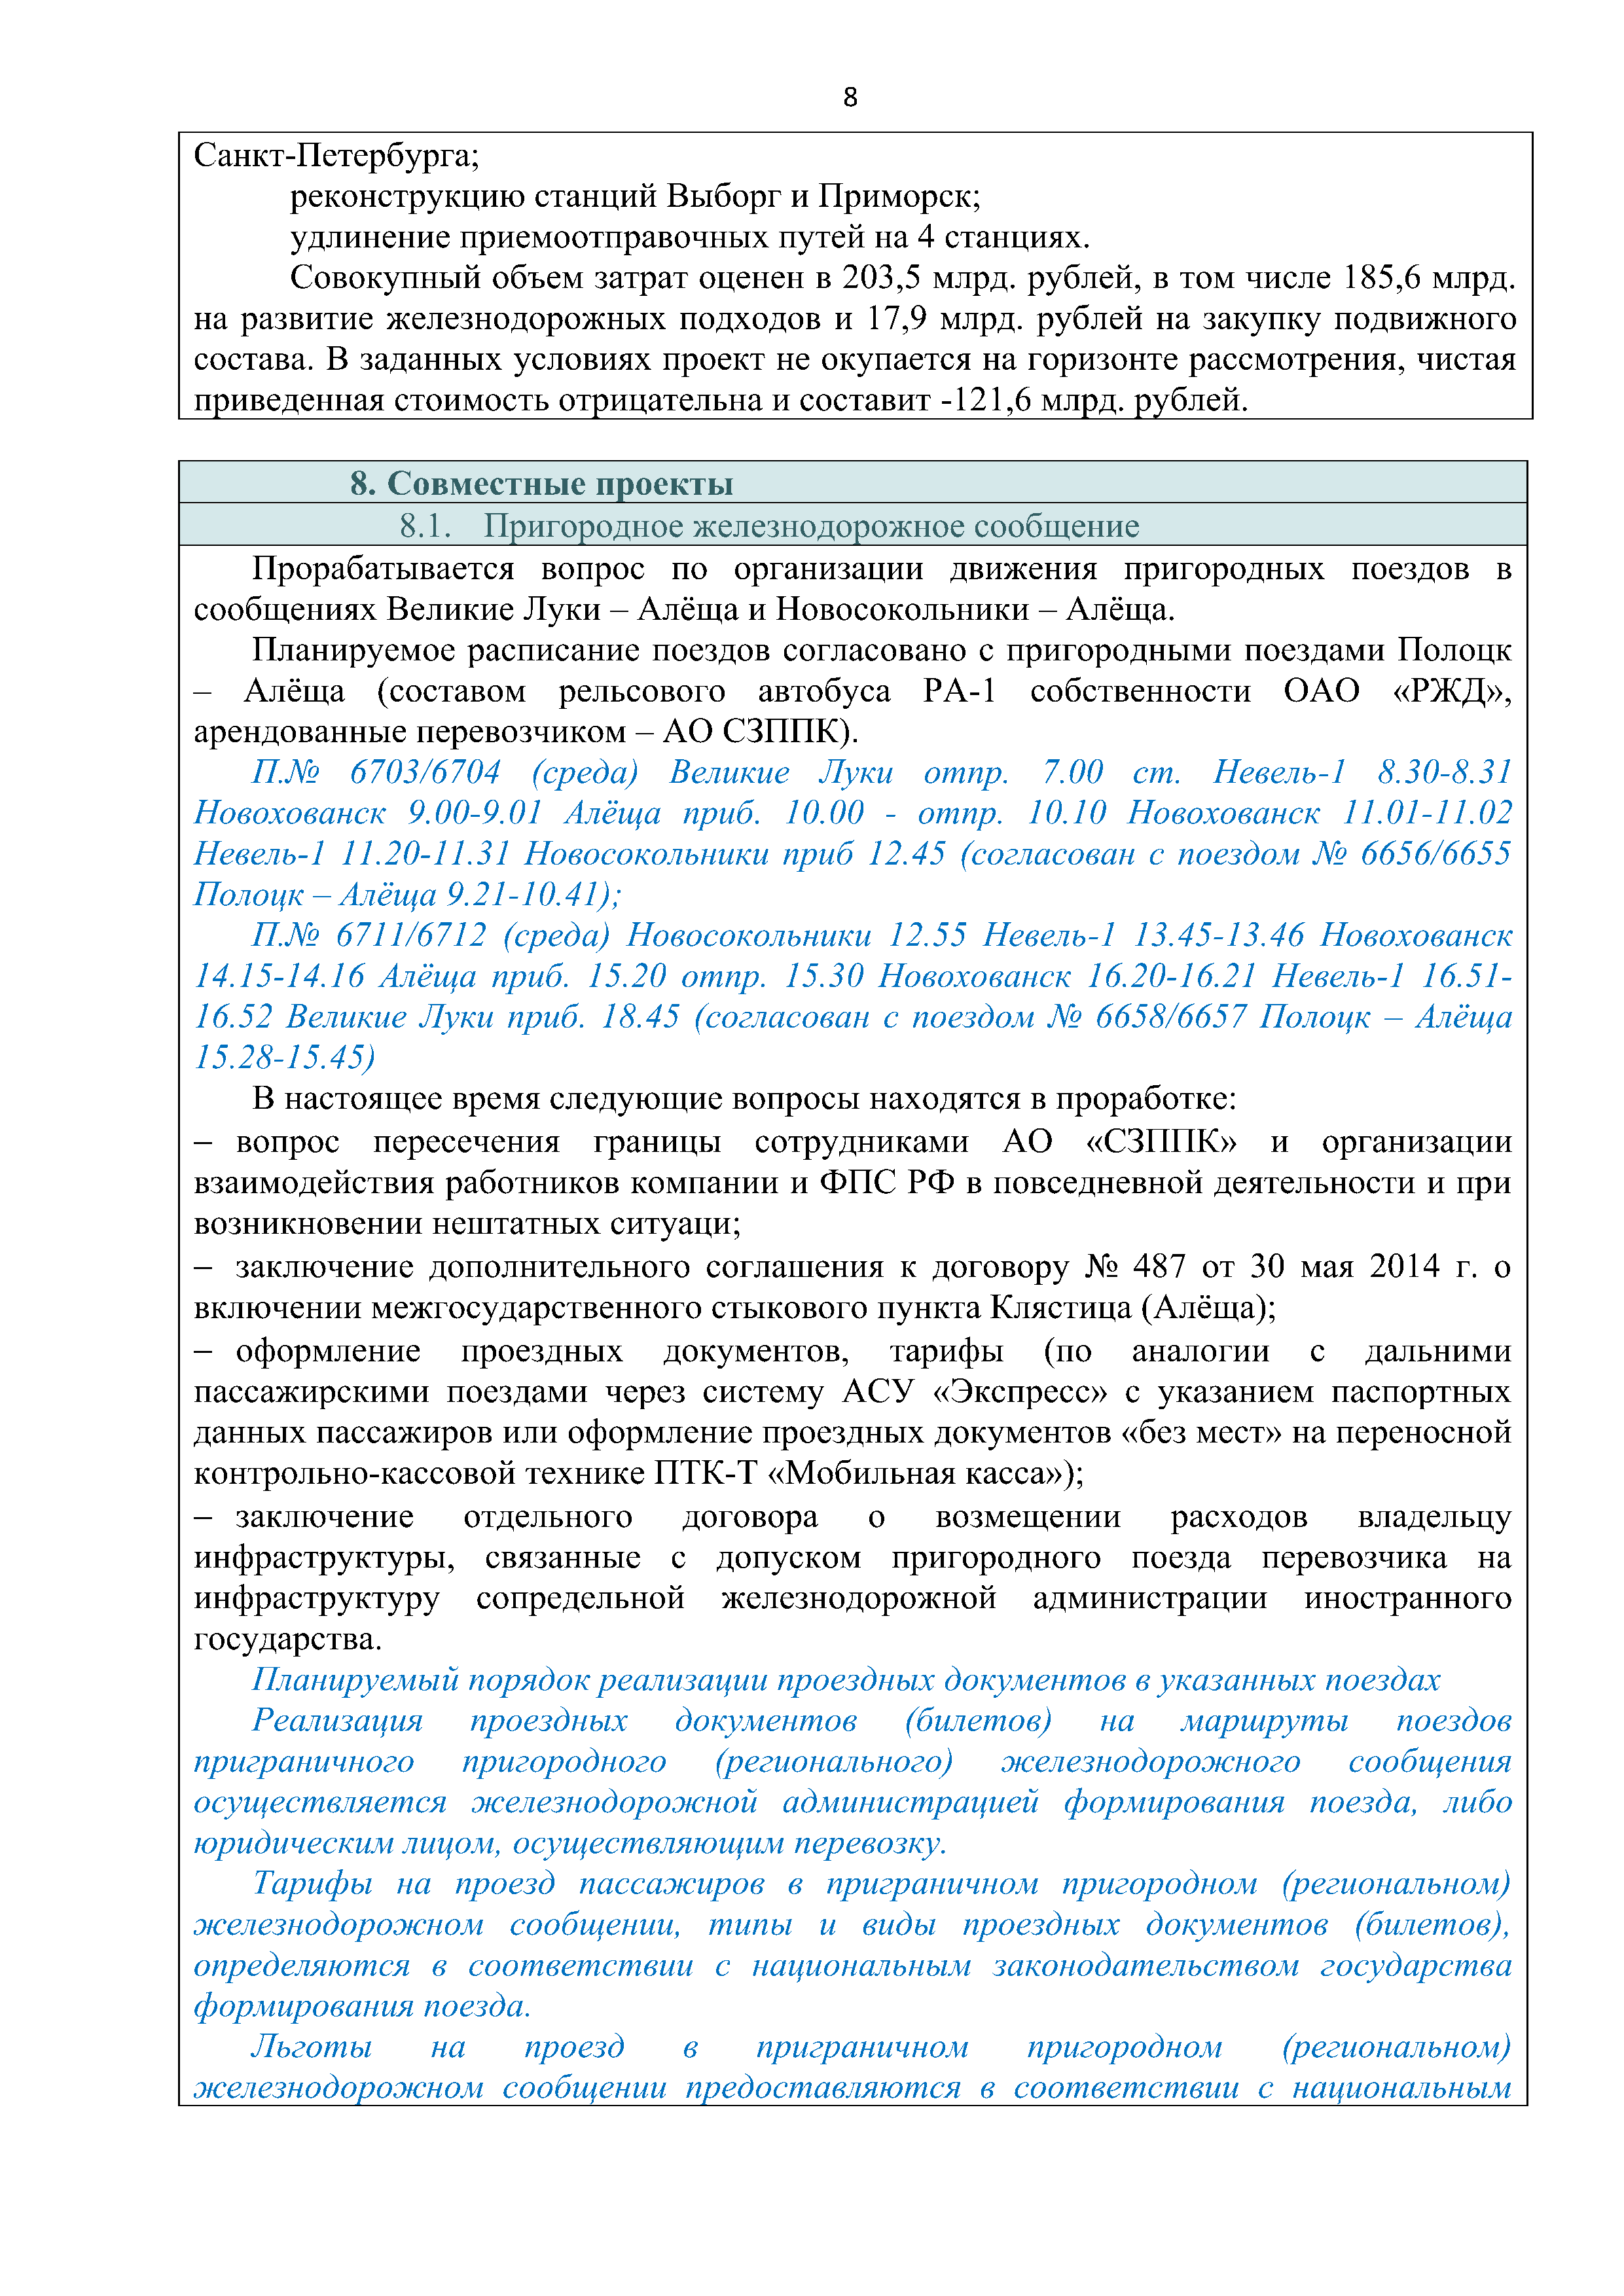 Справочная информация о взаимодействии ОАО «РЖД» с Республикой Беларусь (Страница 8)